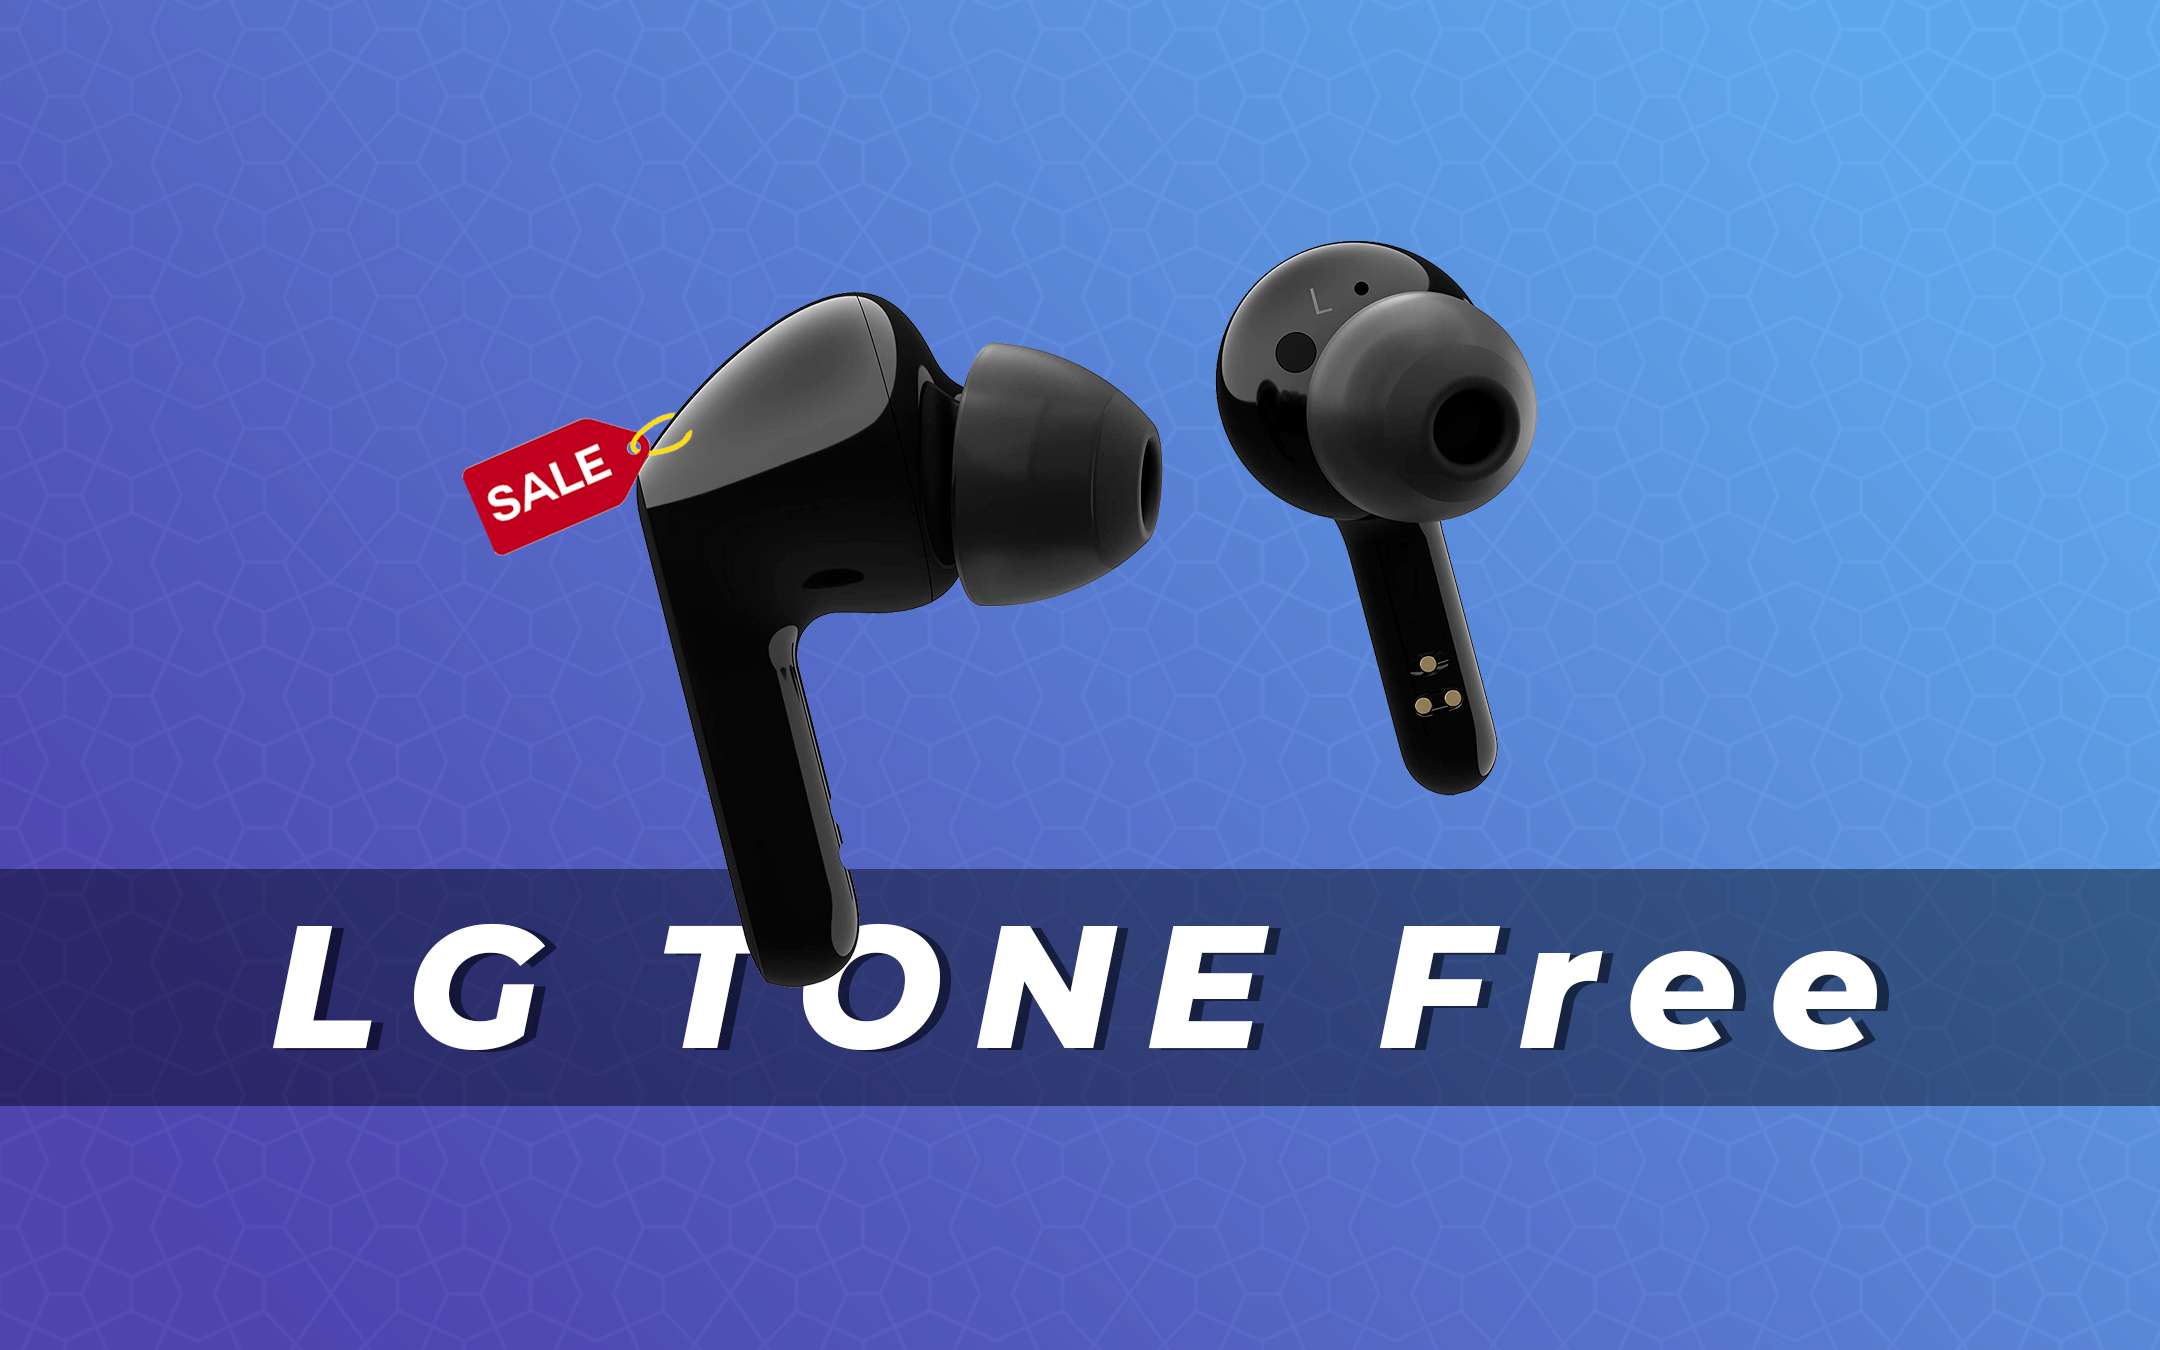 LG TONE Free FN6 a metà prezzo (-47%) | Offerte Amazon